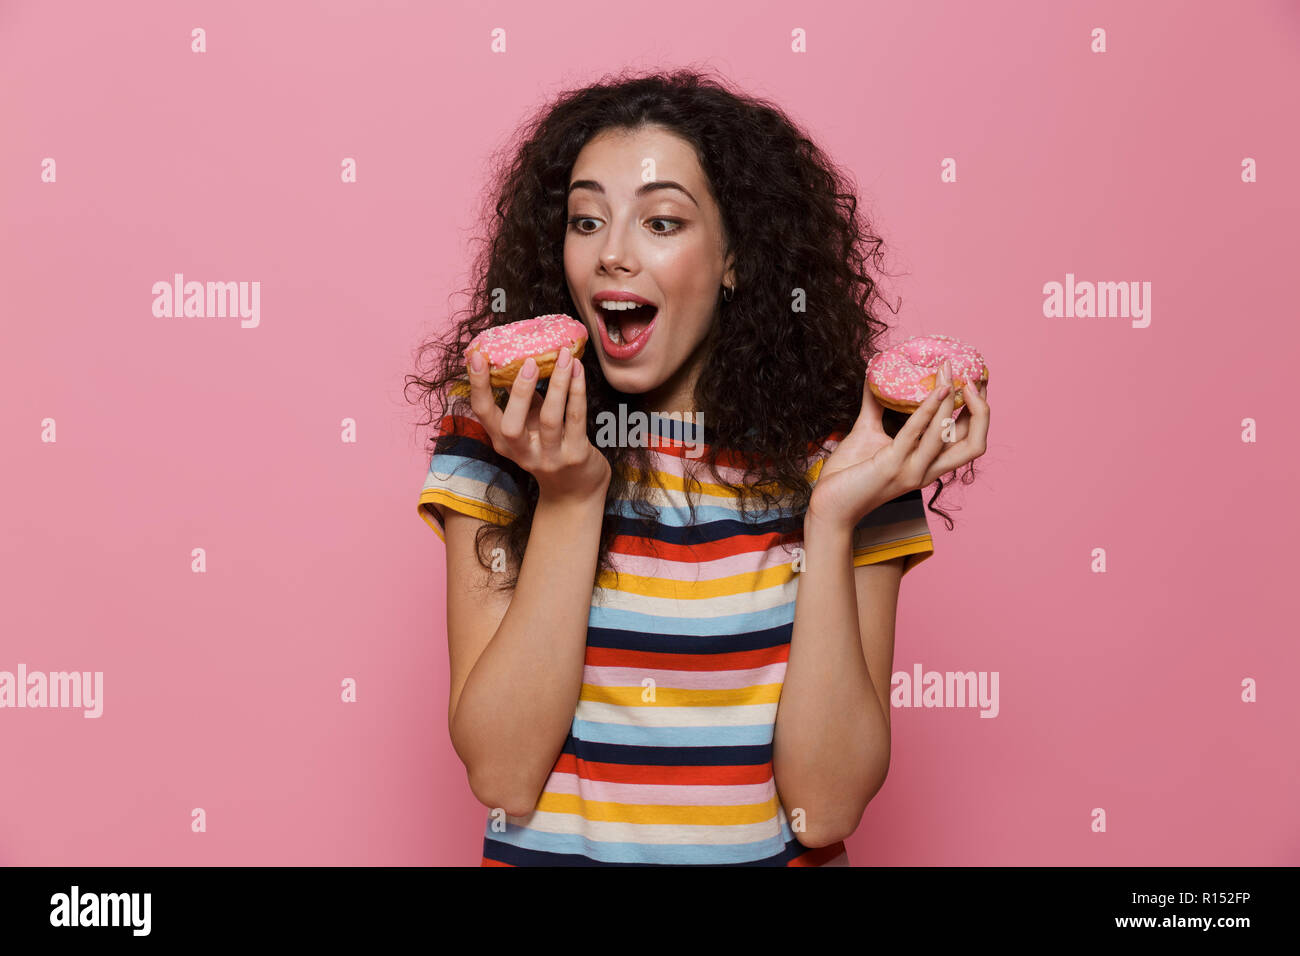 Photo de femme brune 20s avec les cheveux bouclés de jouer et de manger des beignes au fil isolé sur fond rose Banque D'Images